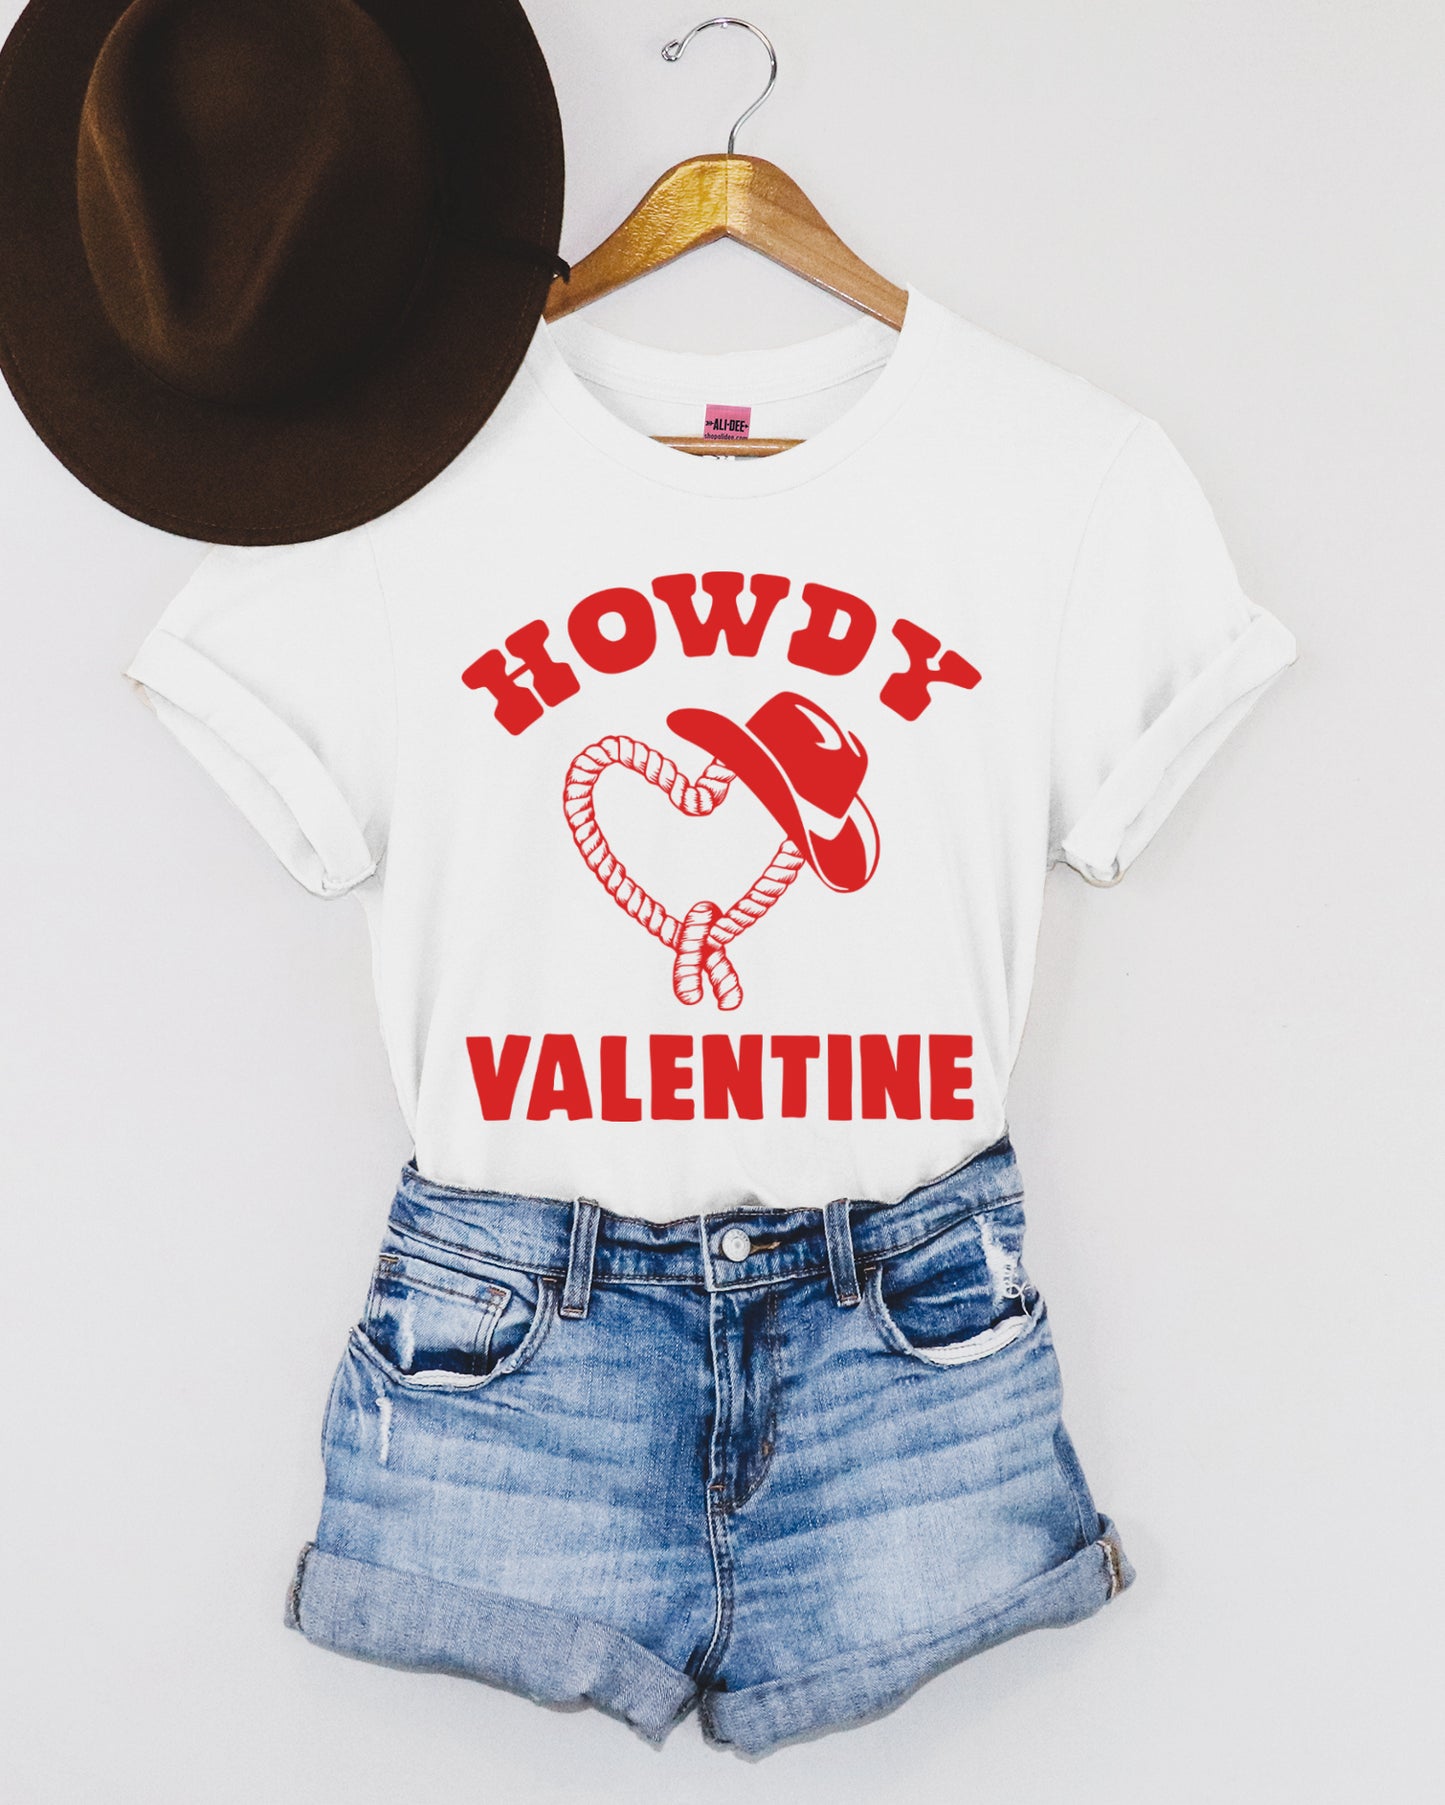 Howdy Valentine Western Valentines Graphic Tee - White